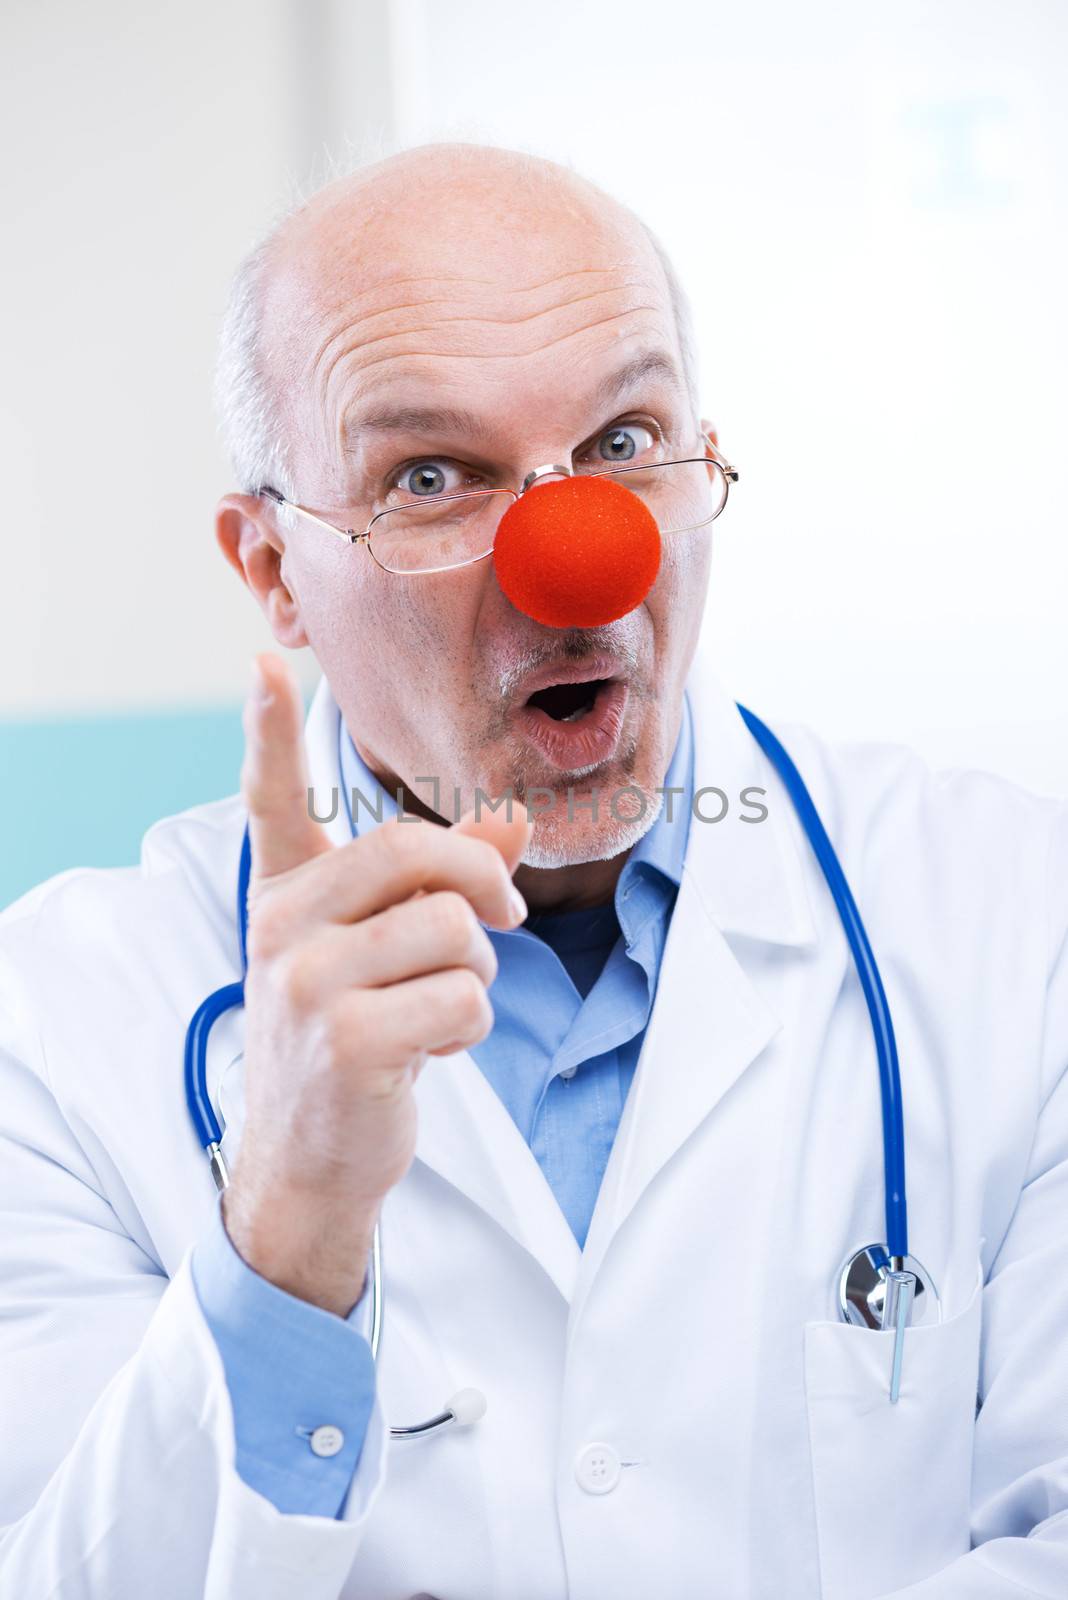 Clown doctor by stokkete